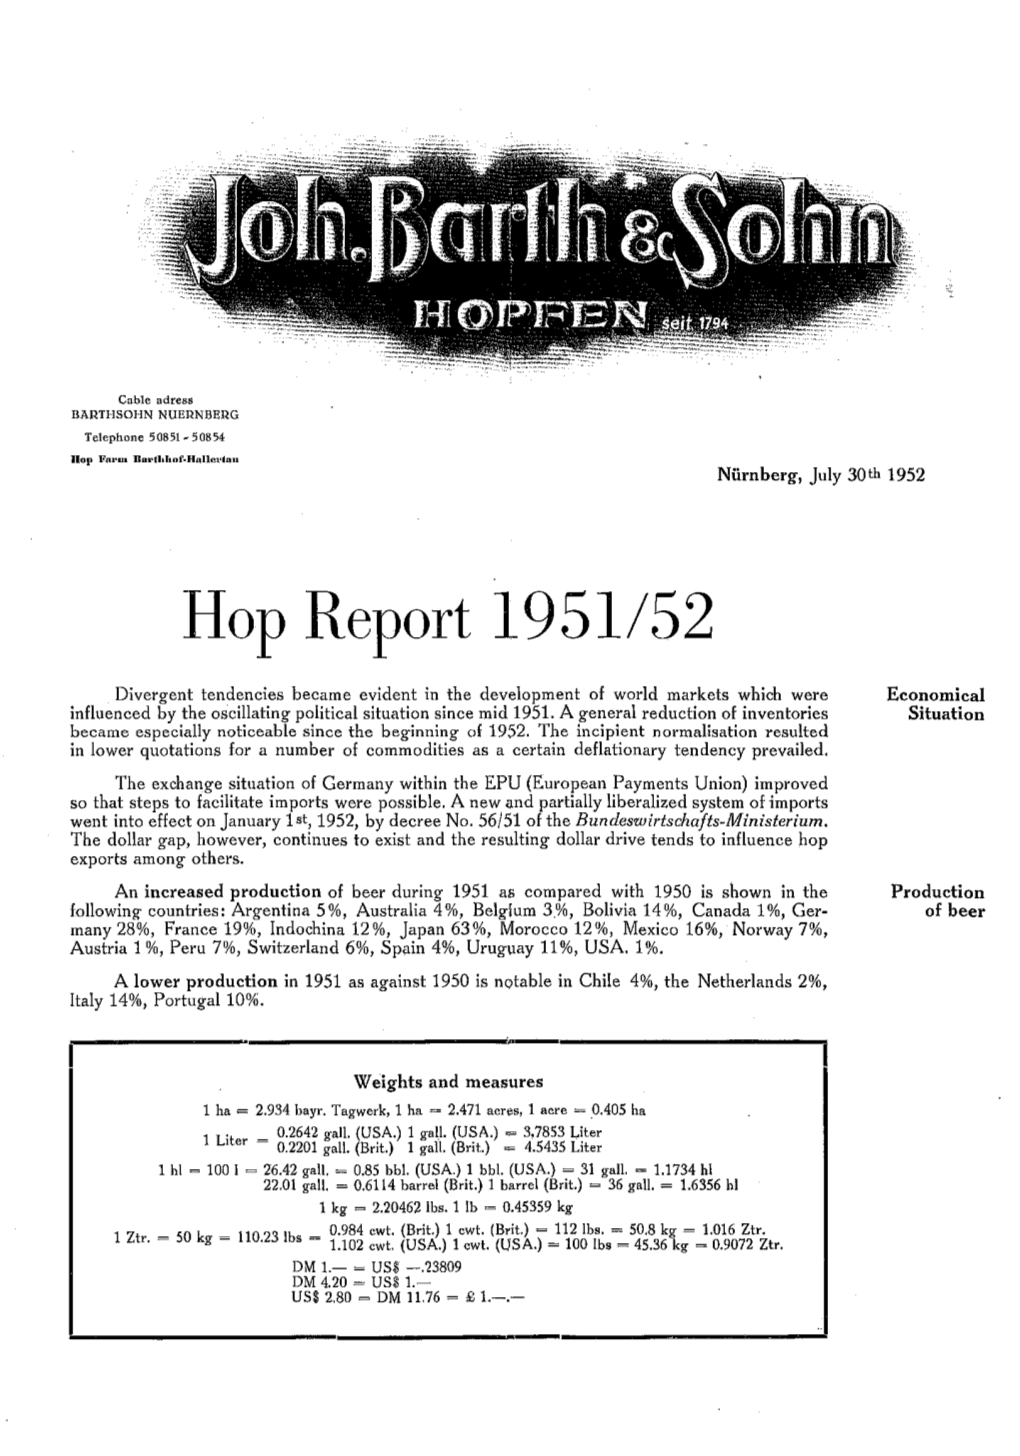 Hop Report 1951/52